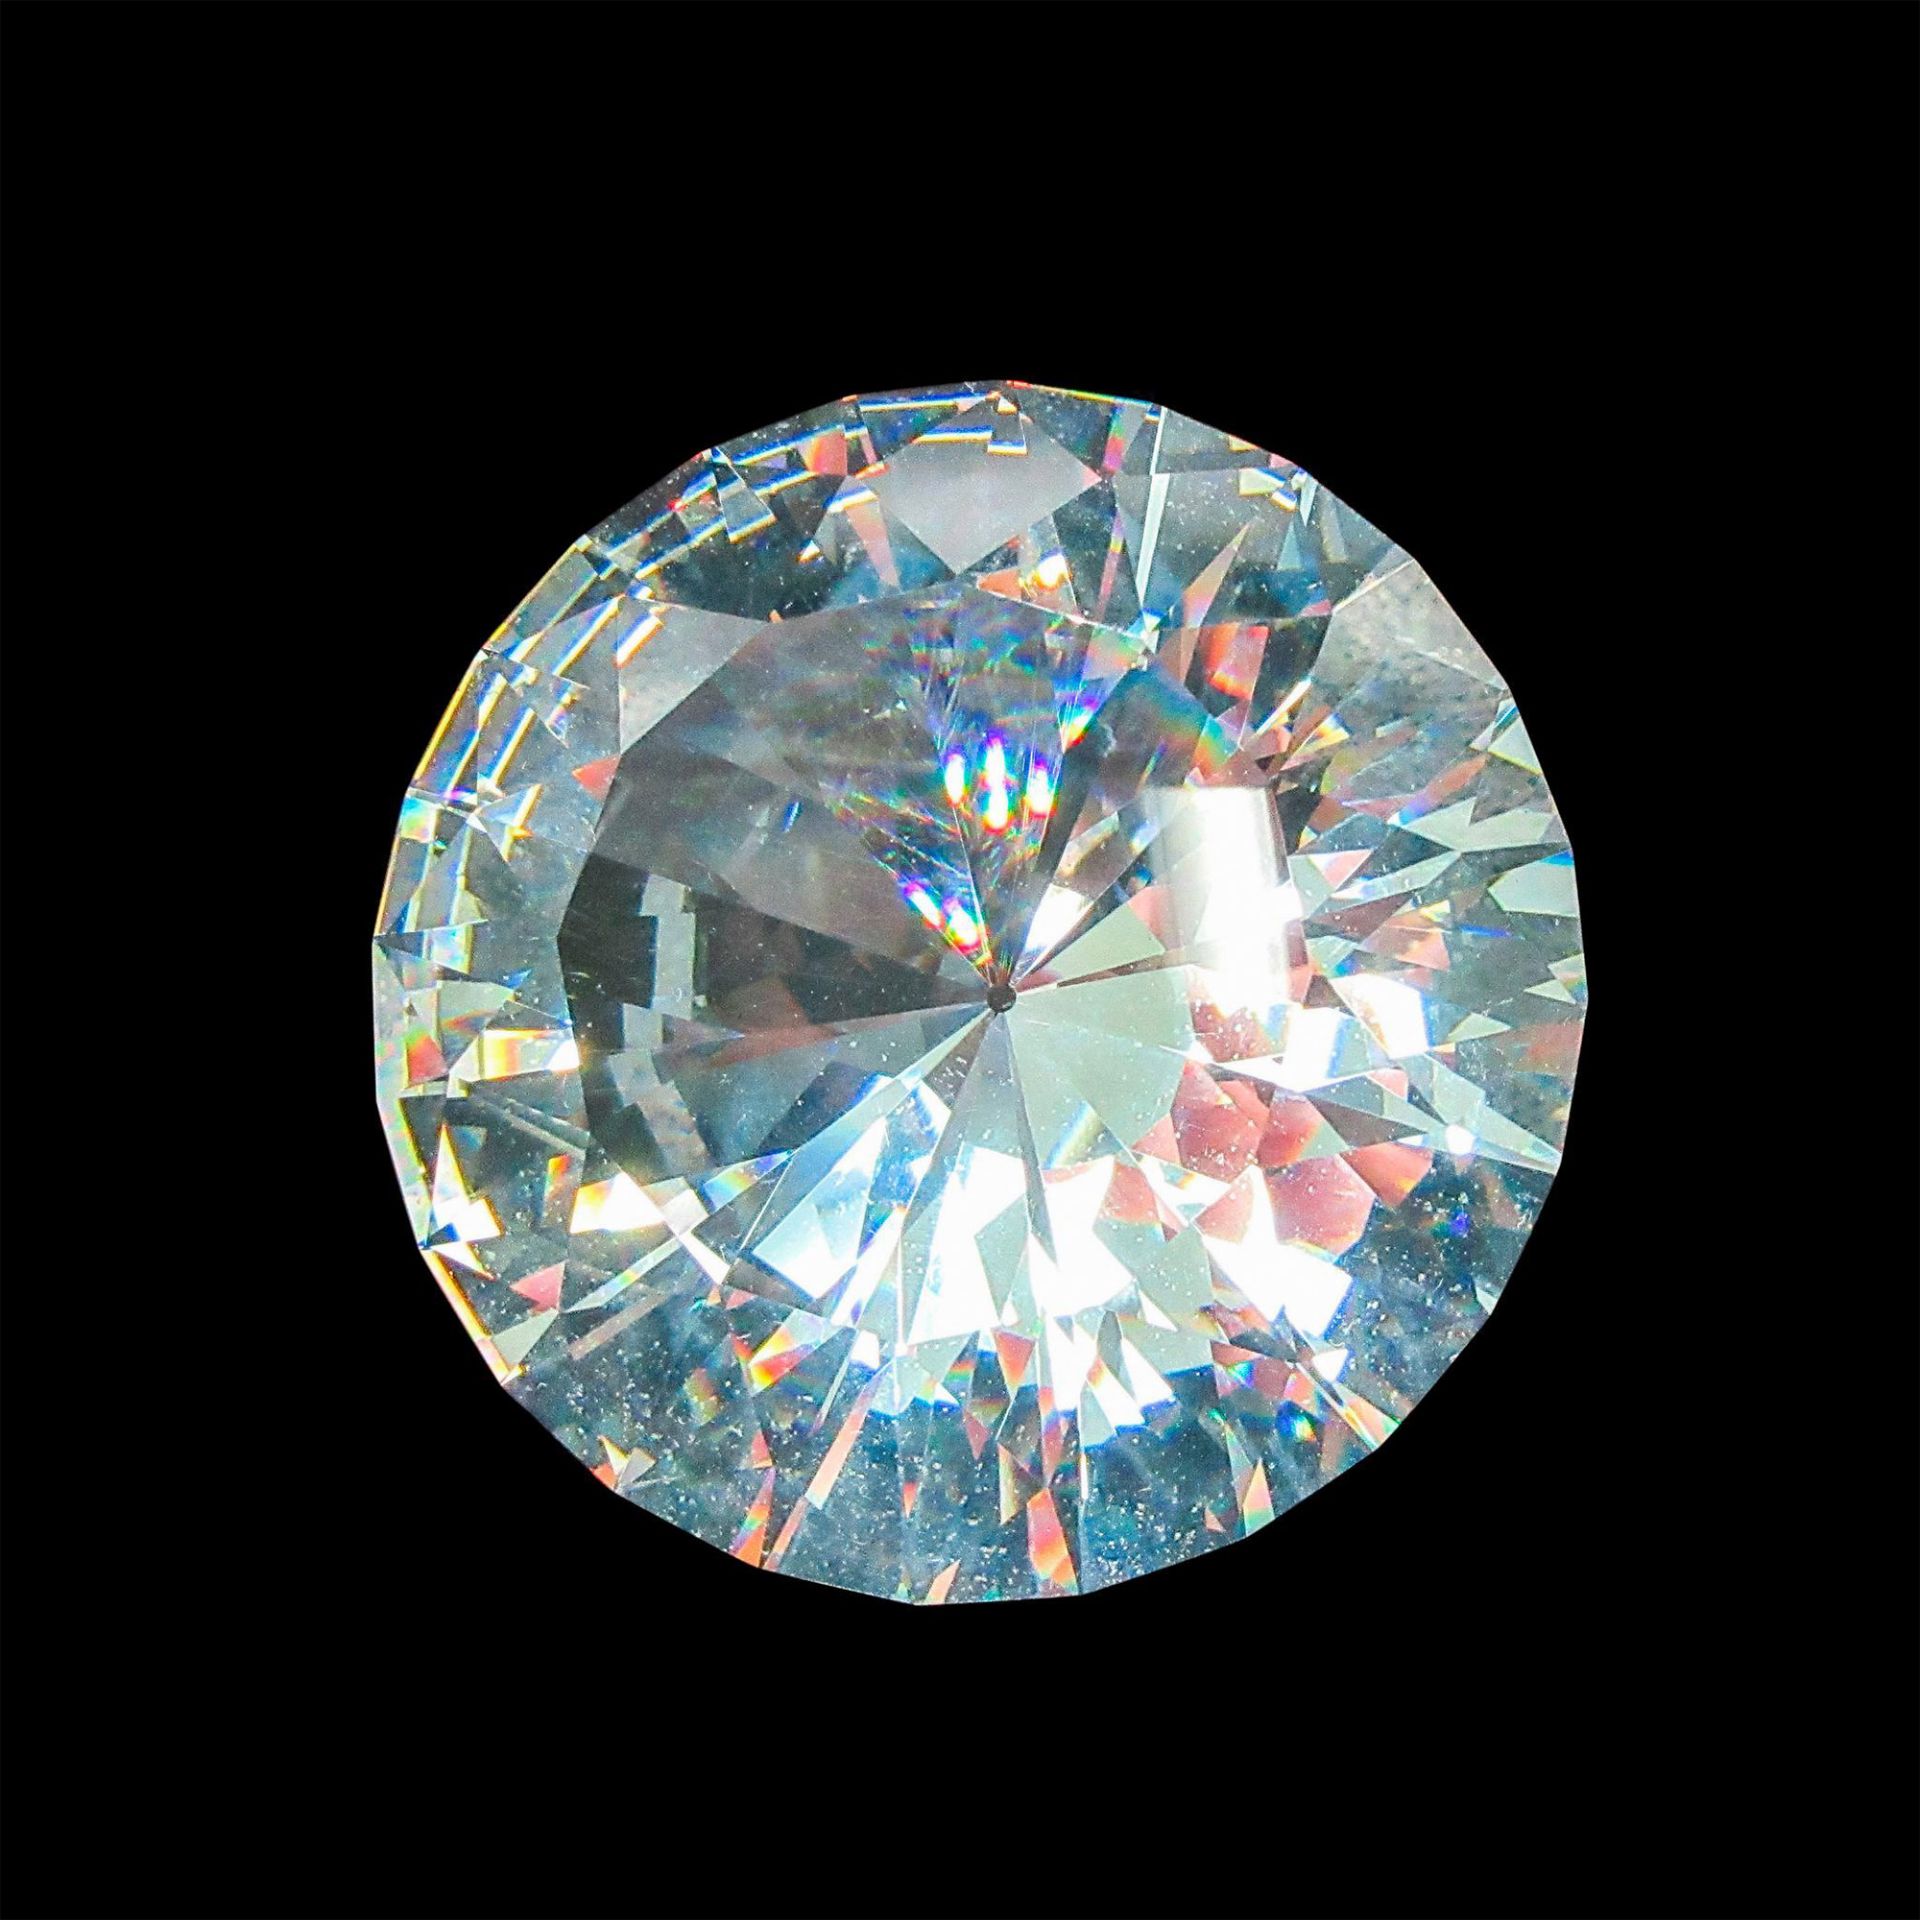 Swarovski Silver Crystal Paperweight Diamond - Image 5 of 5